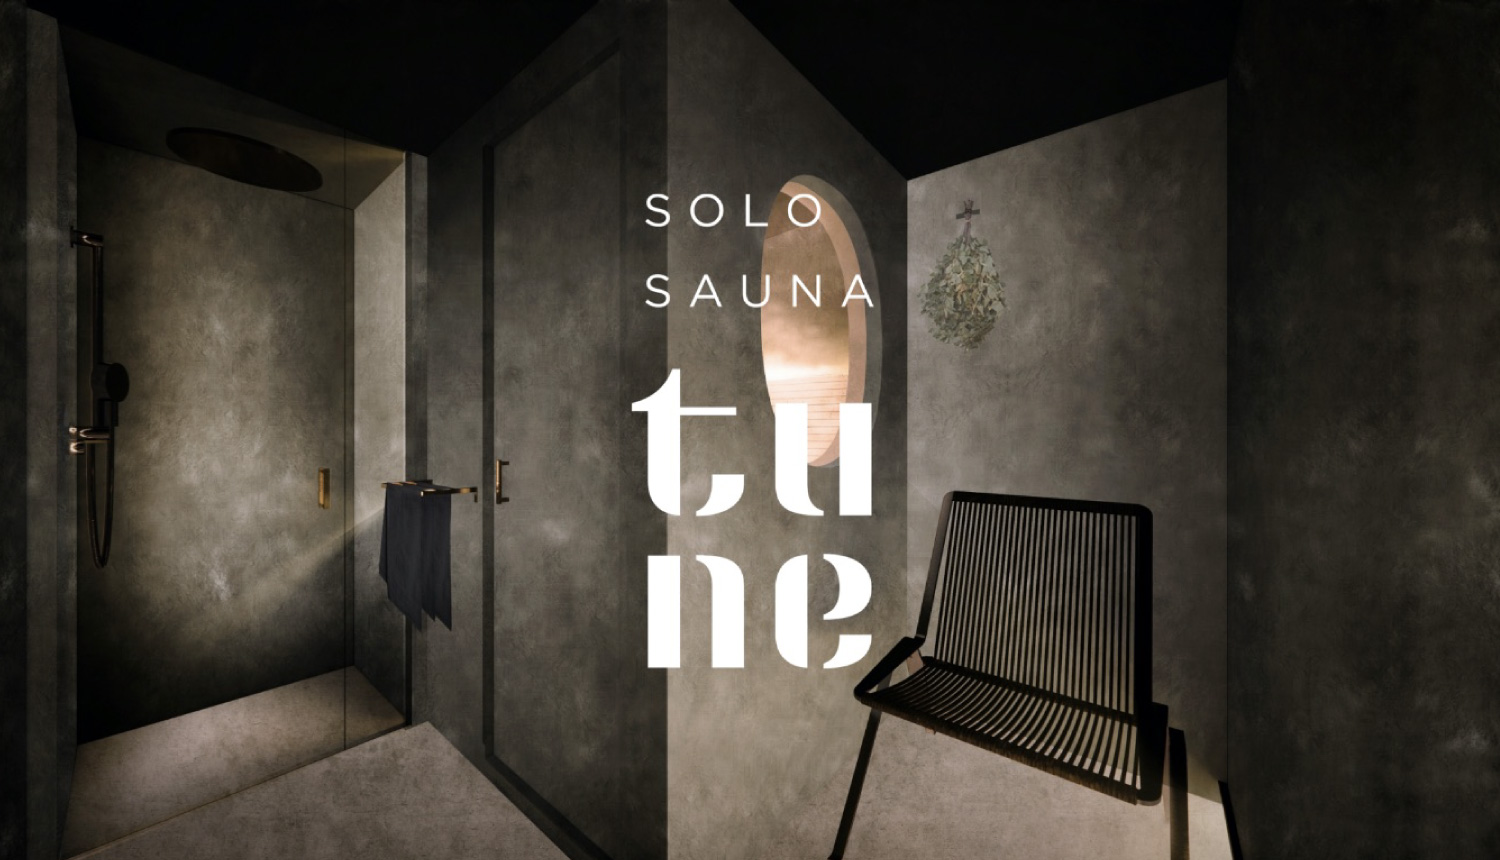 ソロサウナtune-東京-SOLO-SAUNA-tune-桑拿